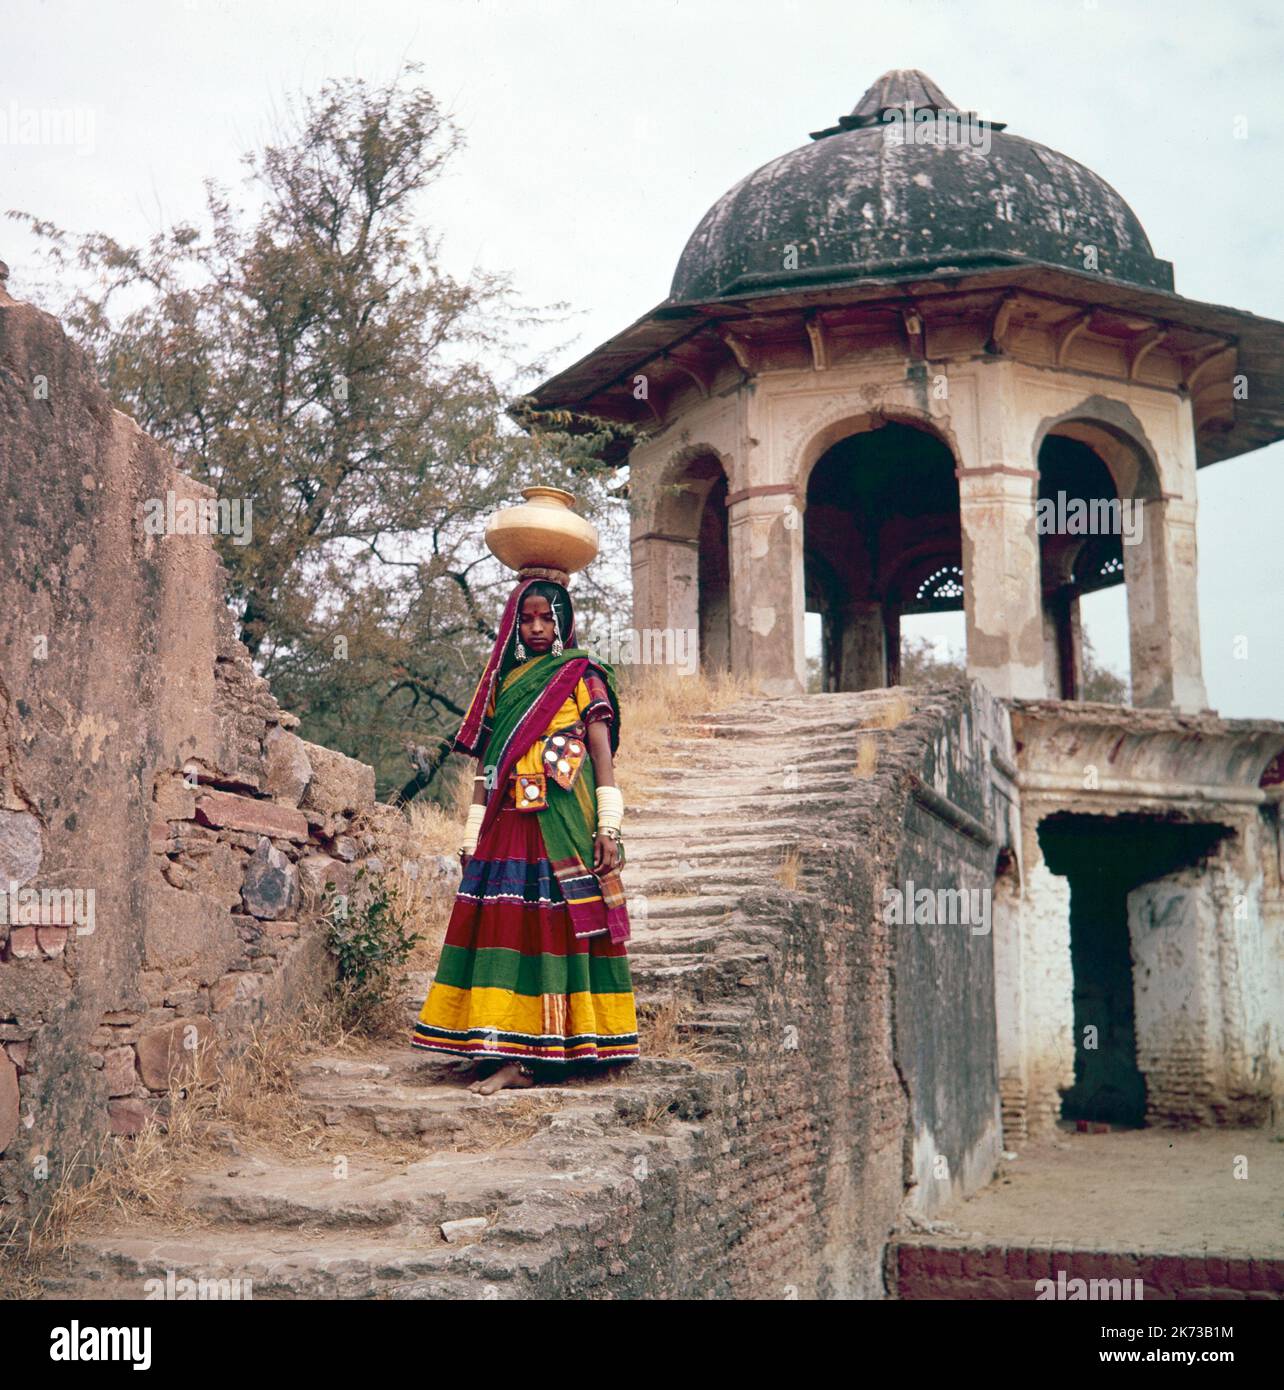 Fotografía en color de la cosecha 1961 que muestra a una joven india que acaba de recoger agua de un pozo y lleva el agua en una cacerola en su cabeza, por unos pasos. Foto de stock